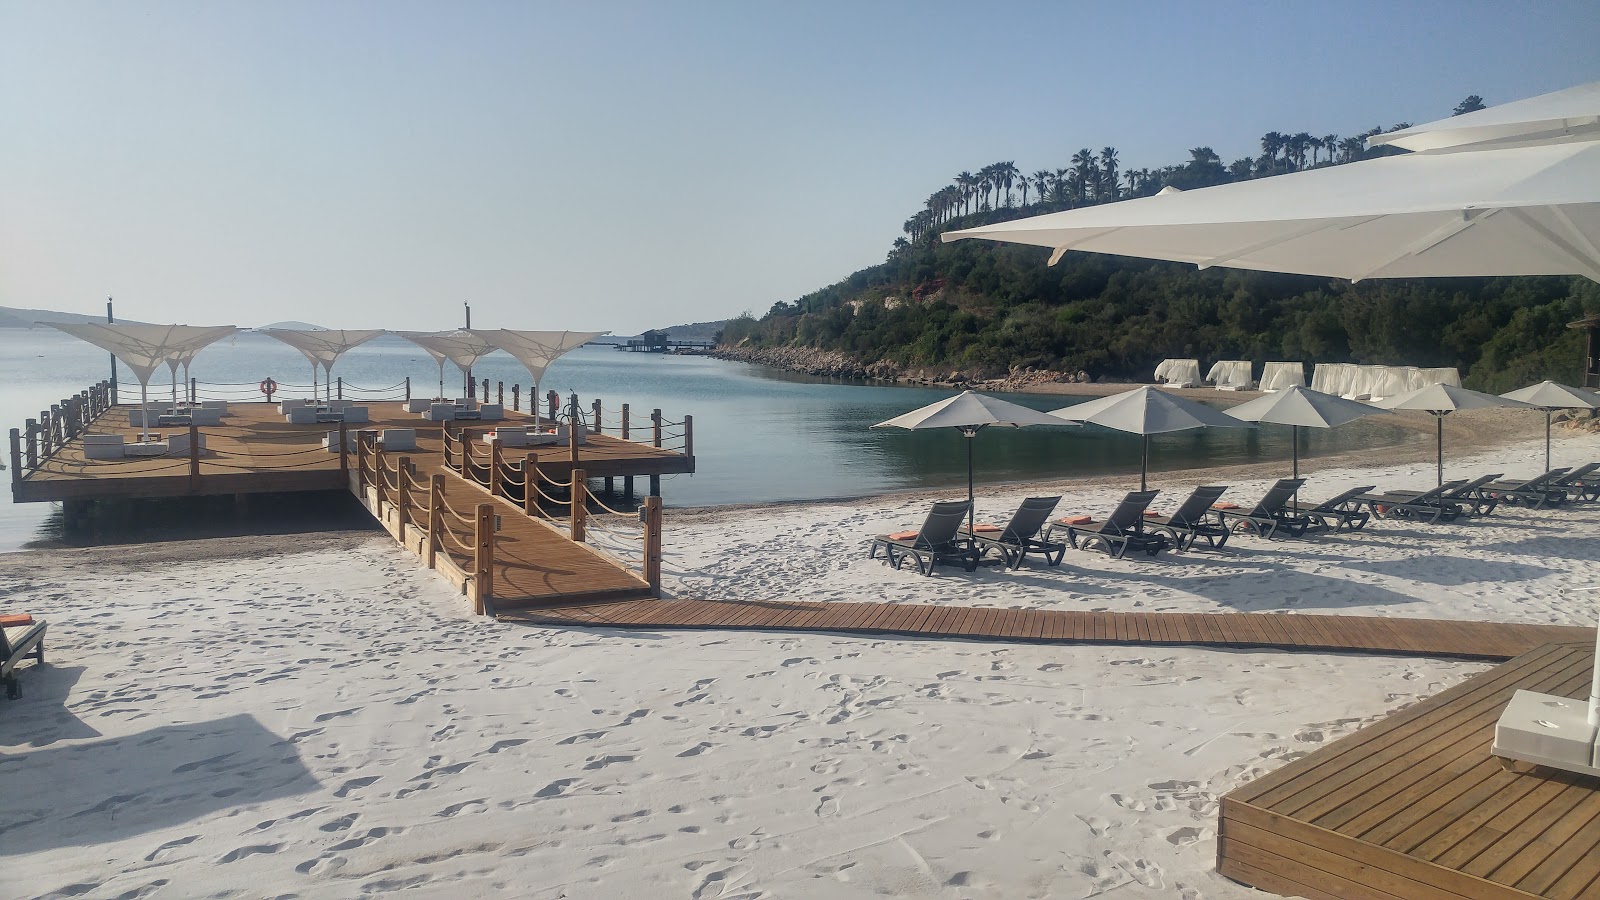 Rixos Bodrum Plajı'in fotoğrafı otel alanı